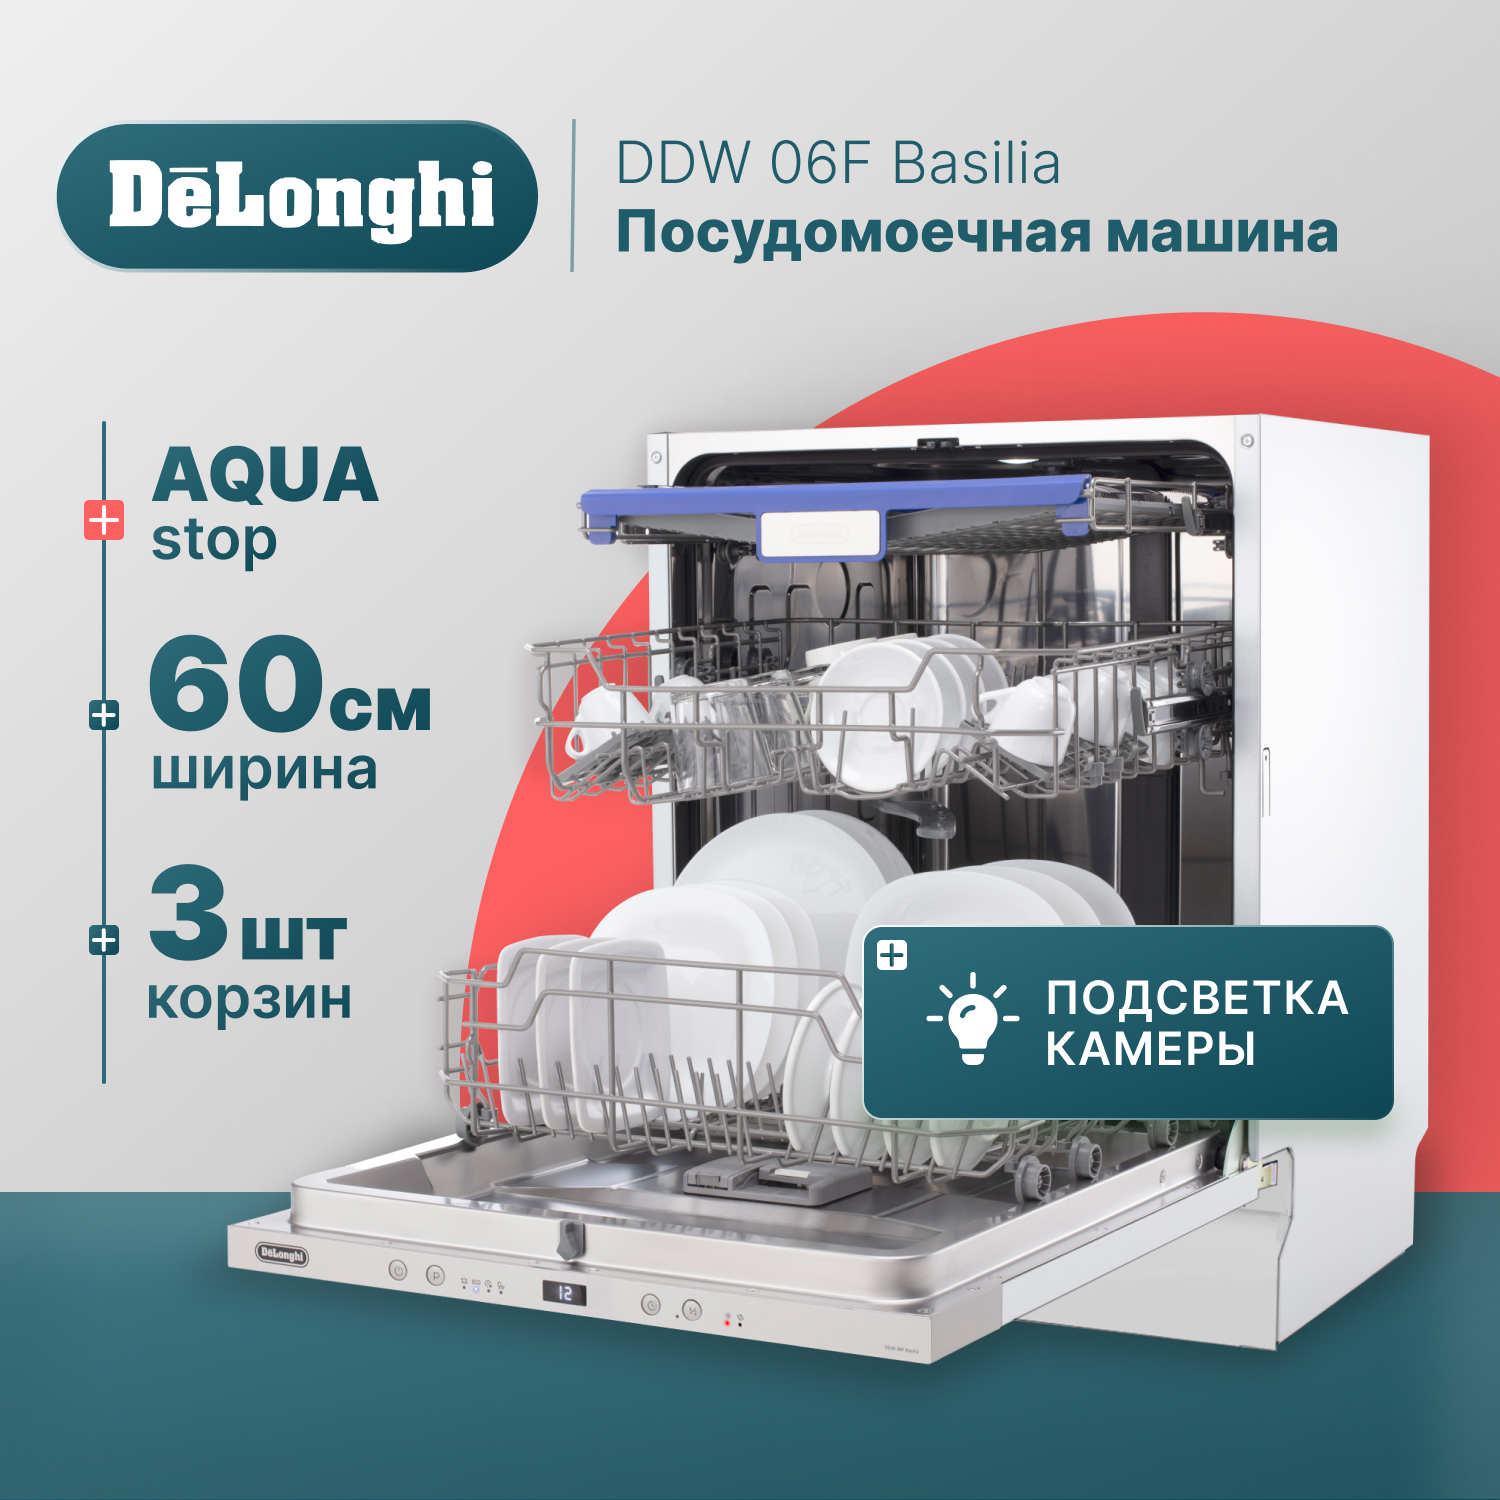 Встраиваемая посудомоечная машина Delonghi DDW06F Basilia – купить в Москве, цены в интернет-магазинах на Мегамаркет